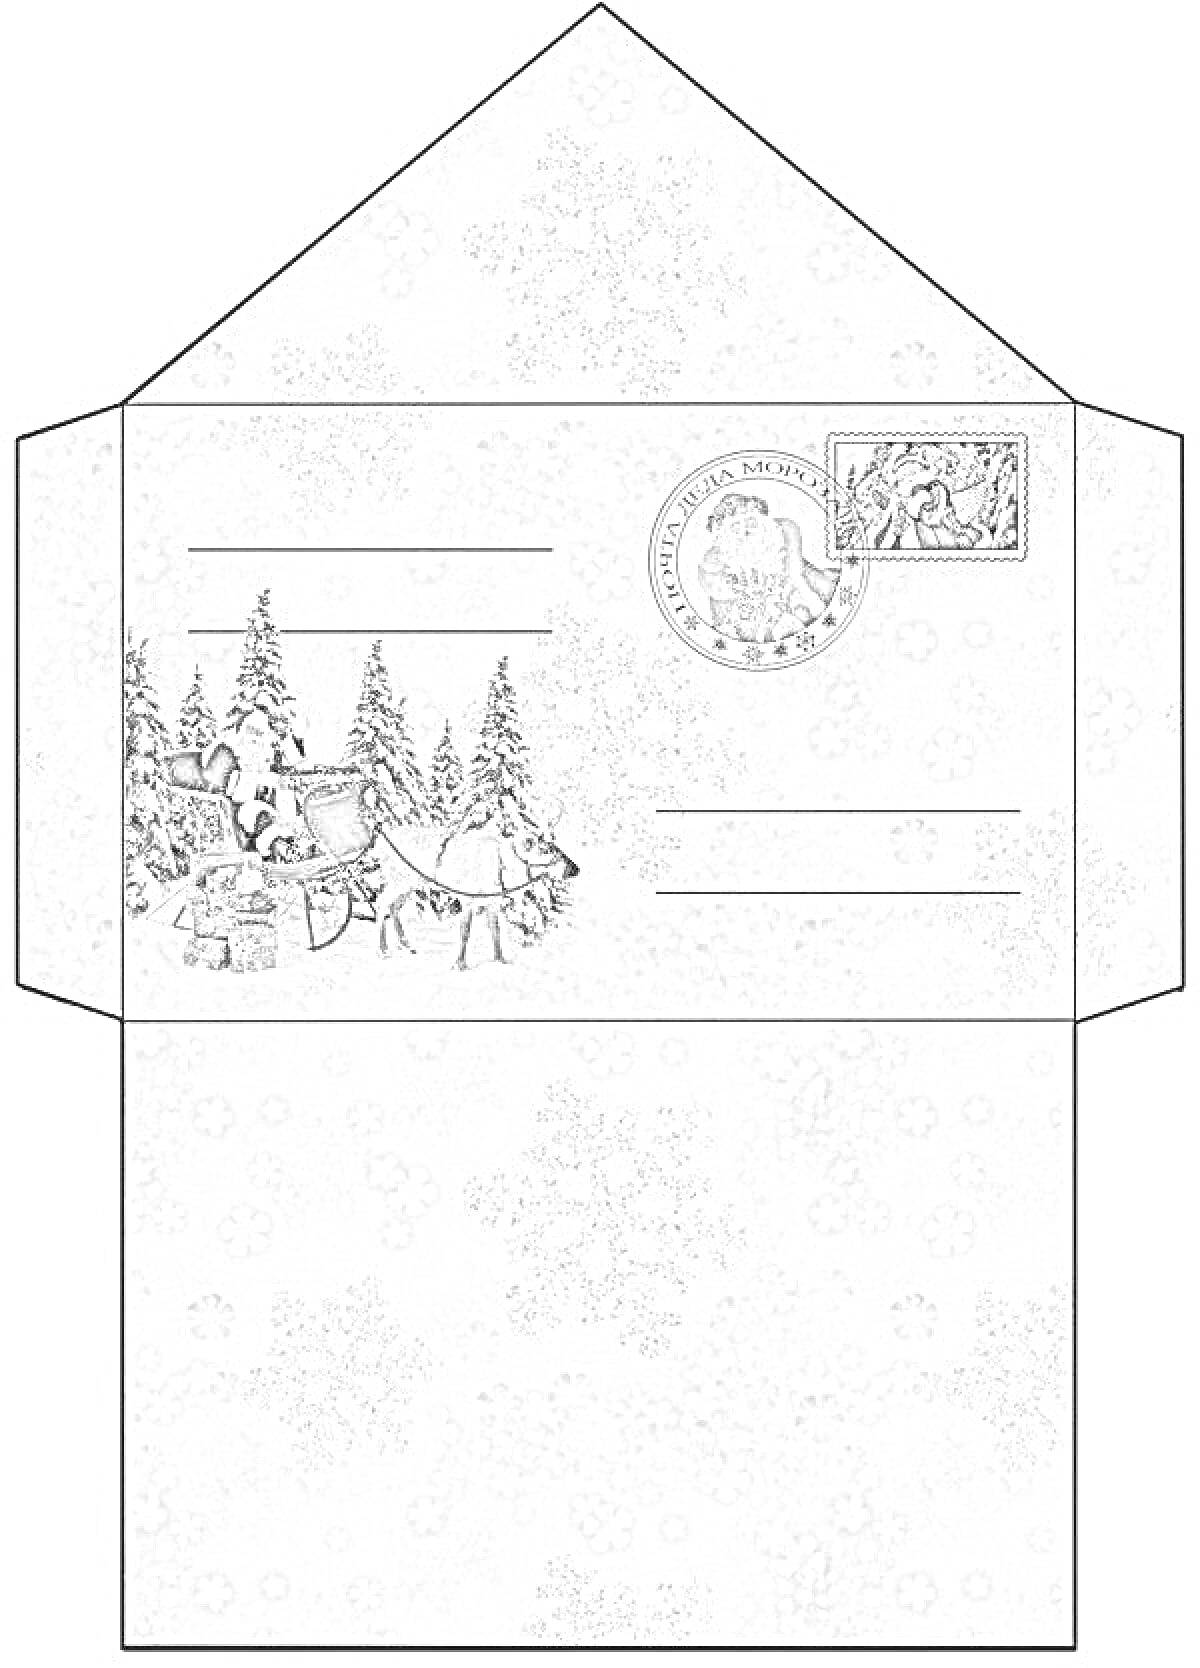 Конверт для Деда Мороза с рисунком Санта-Клауса в санях, еловых деревьев, подарков, печати и снежинок